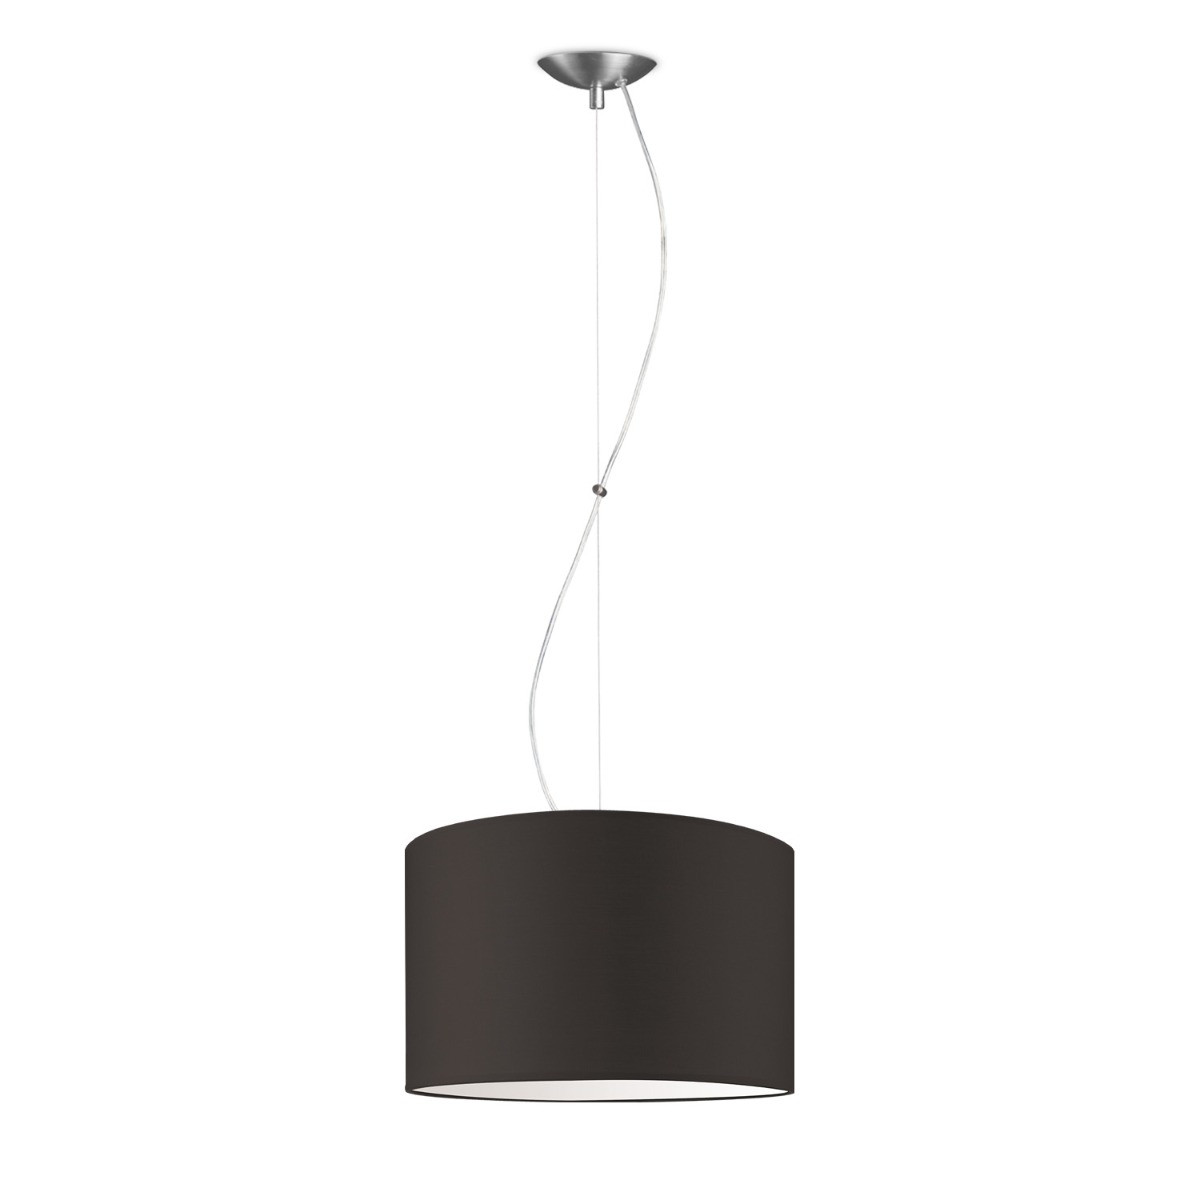 Light depot - hanglamp basic deluxe bling Ø 35 cm - bruin - Outlet